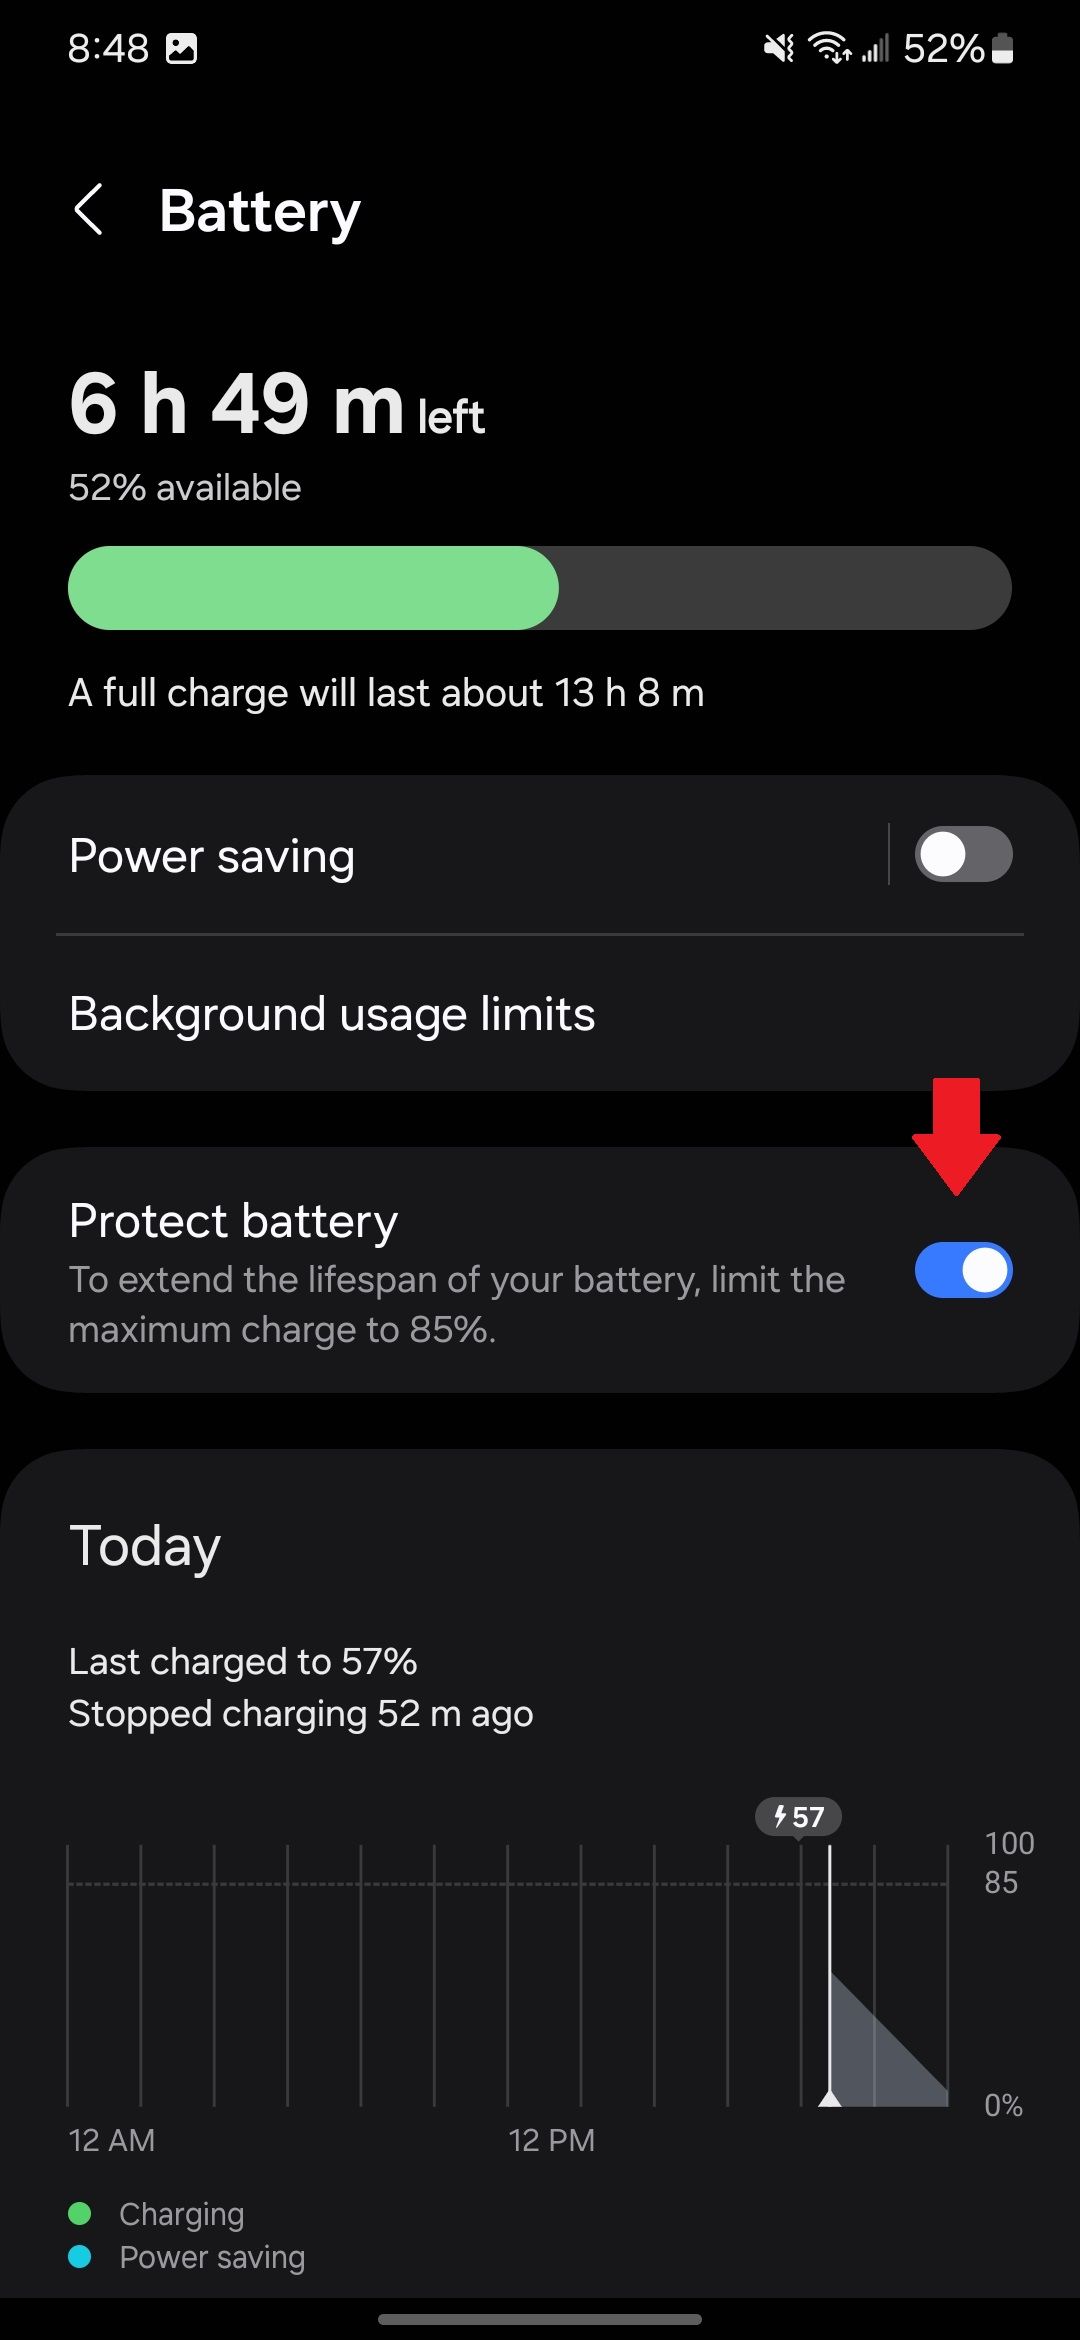 Configurações de bateria Samsung no aplicativo Configurações com uma seta vermelha apontando para o botão Proteger bateria